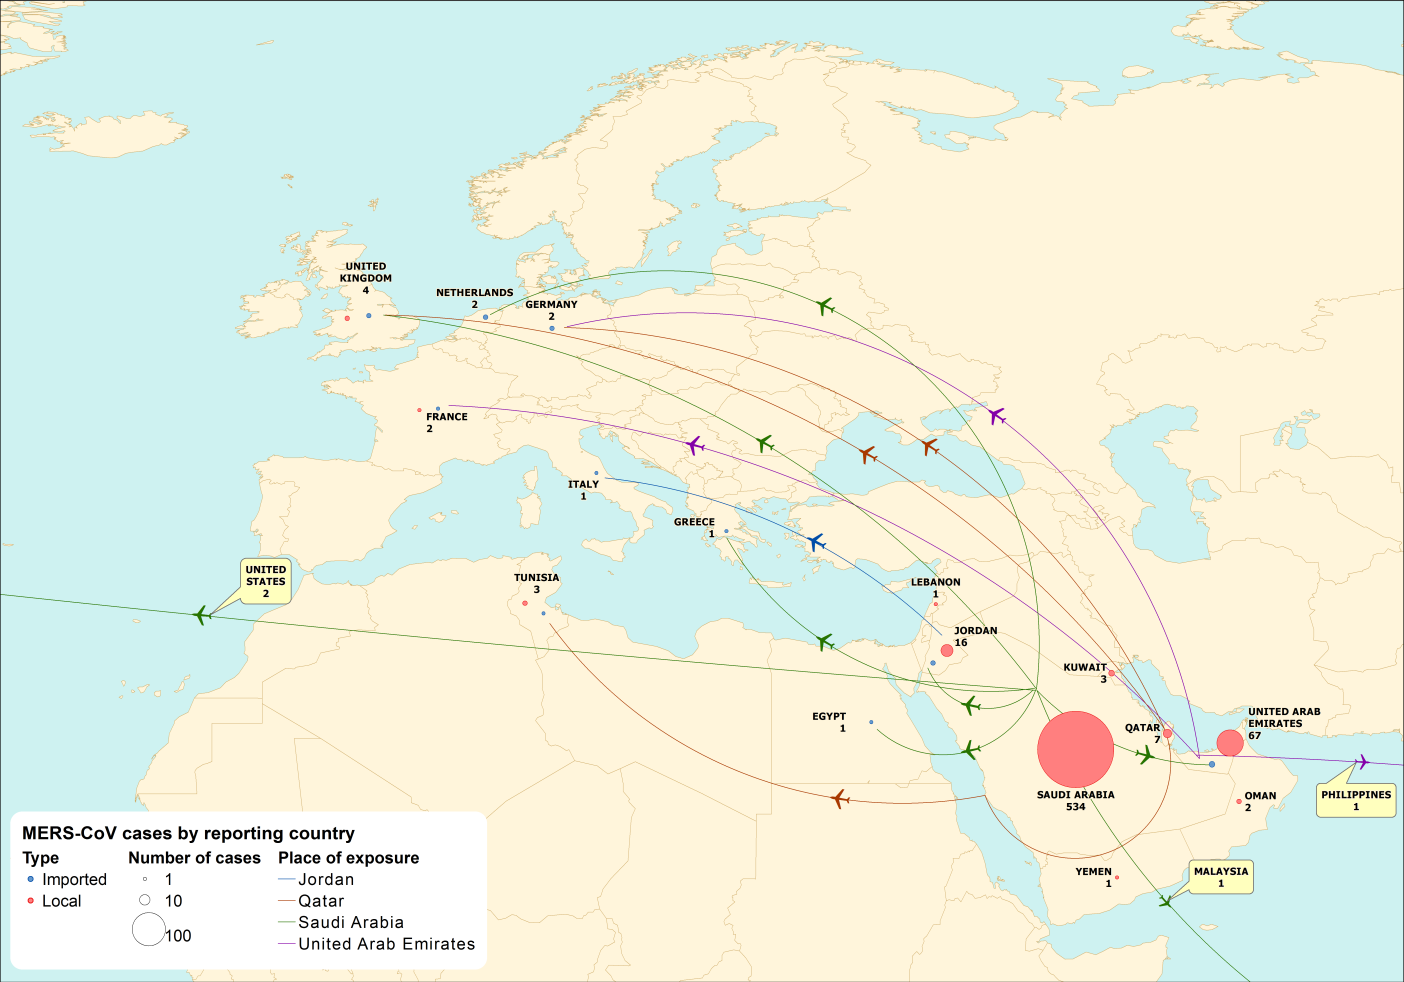 Figur 2. Geografisk fördelning av bekräftade fall av MERS-CoV och troligt smittland för dessa, 665 fall den 22 maj 2014. Från European Centre for Disease Prevention and Control (ECDC) 2014-05-31.